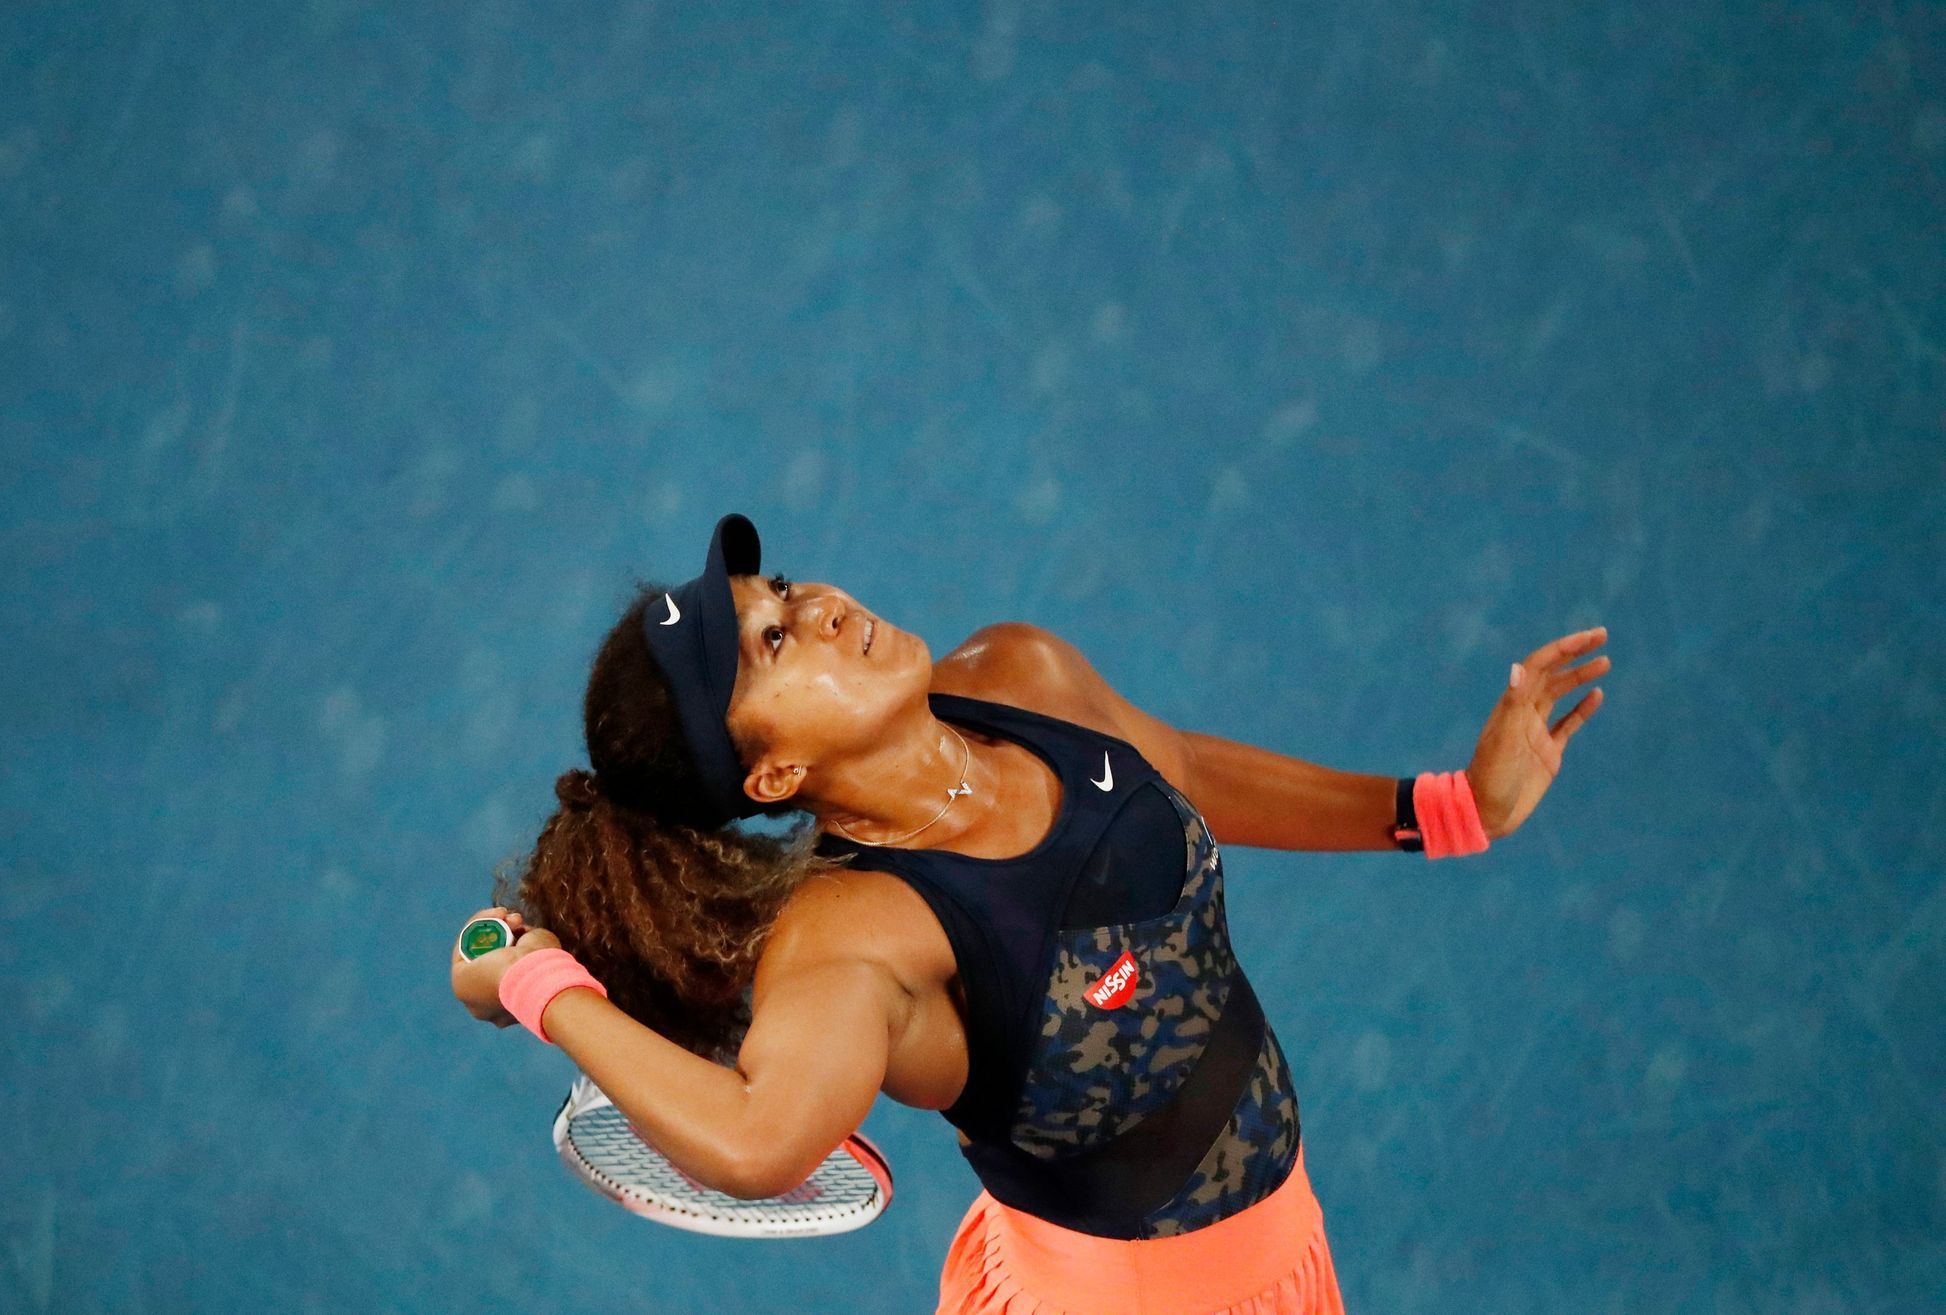 Naomi Ósakaová ve finále Australian Open 2021